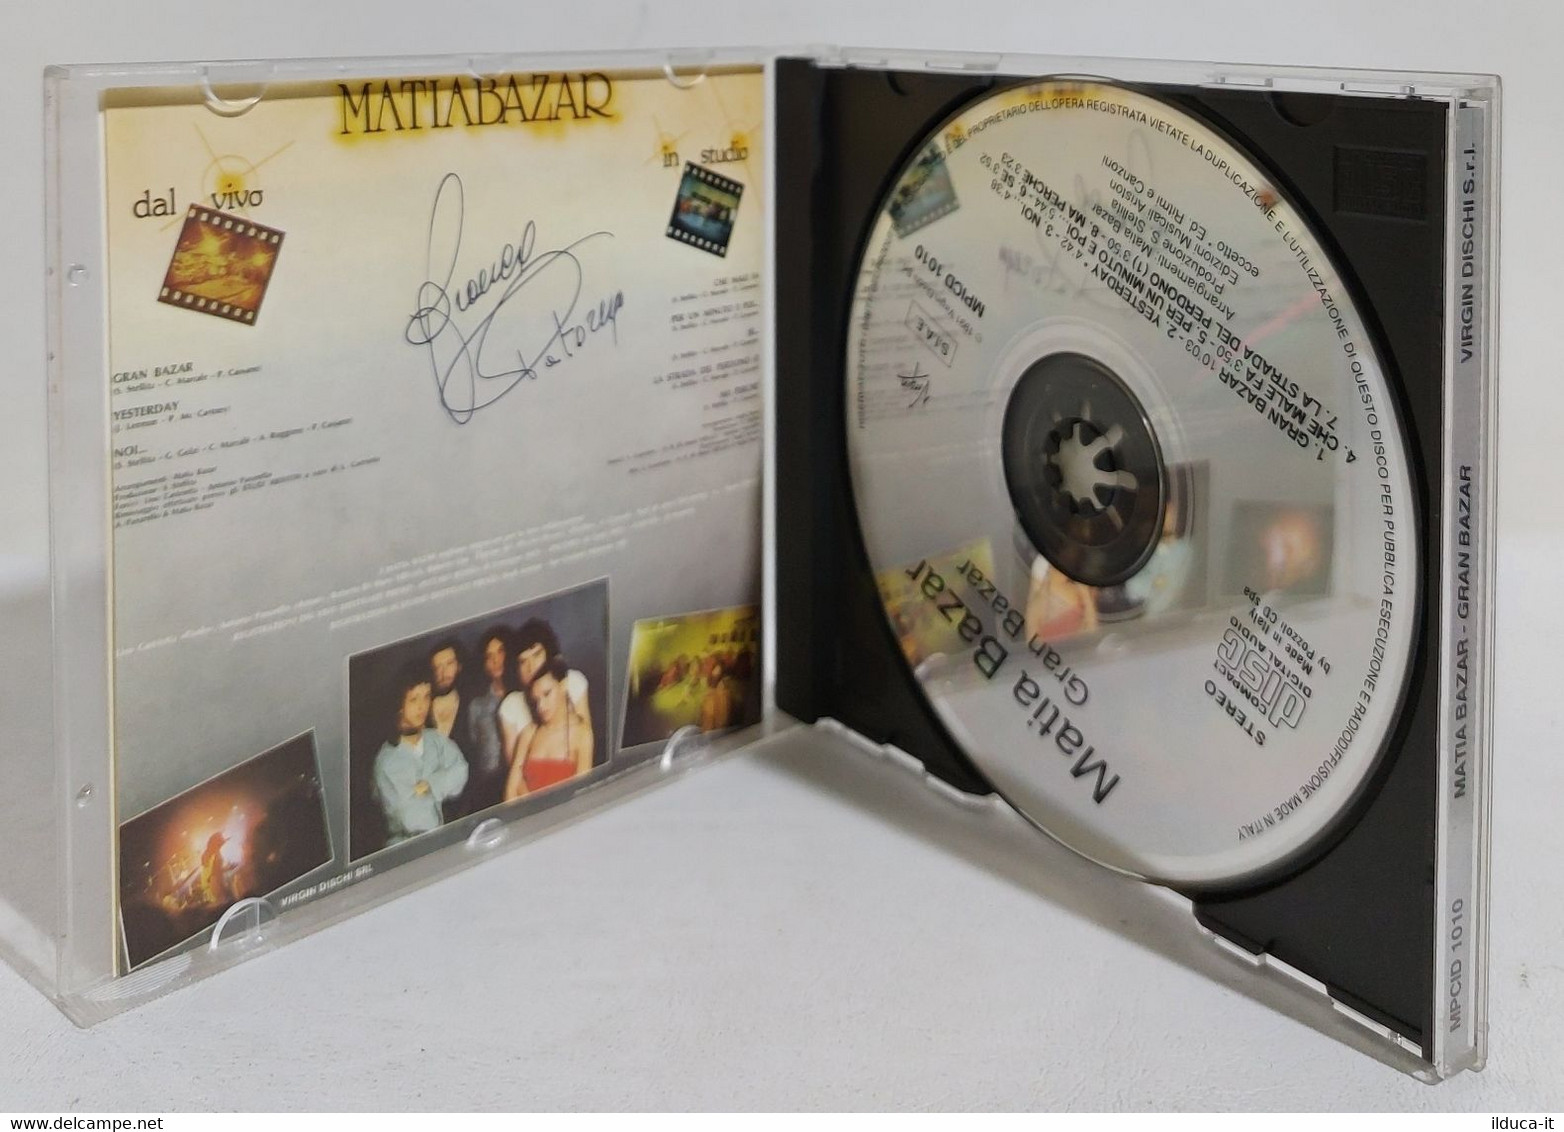 I107650 CD - Matia Bazar - Granbazar - Virgin 1991 - Sonstige - Italienische Musik